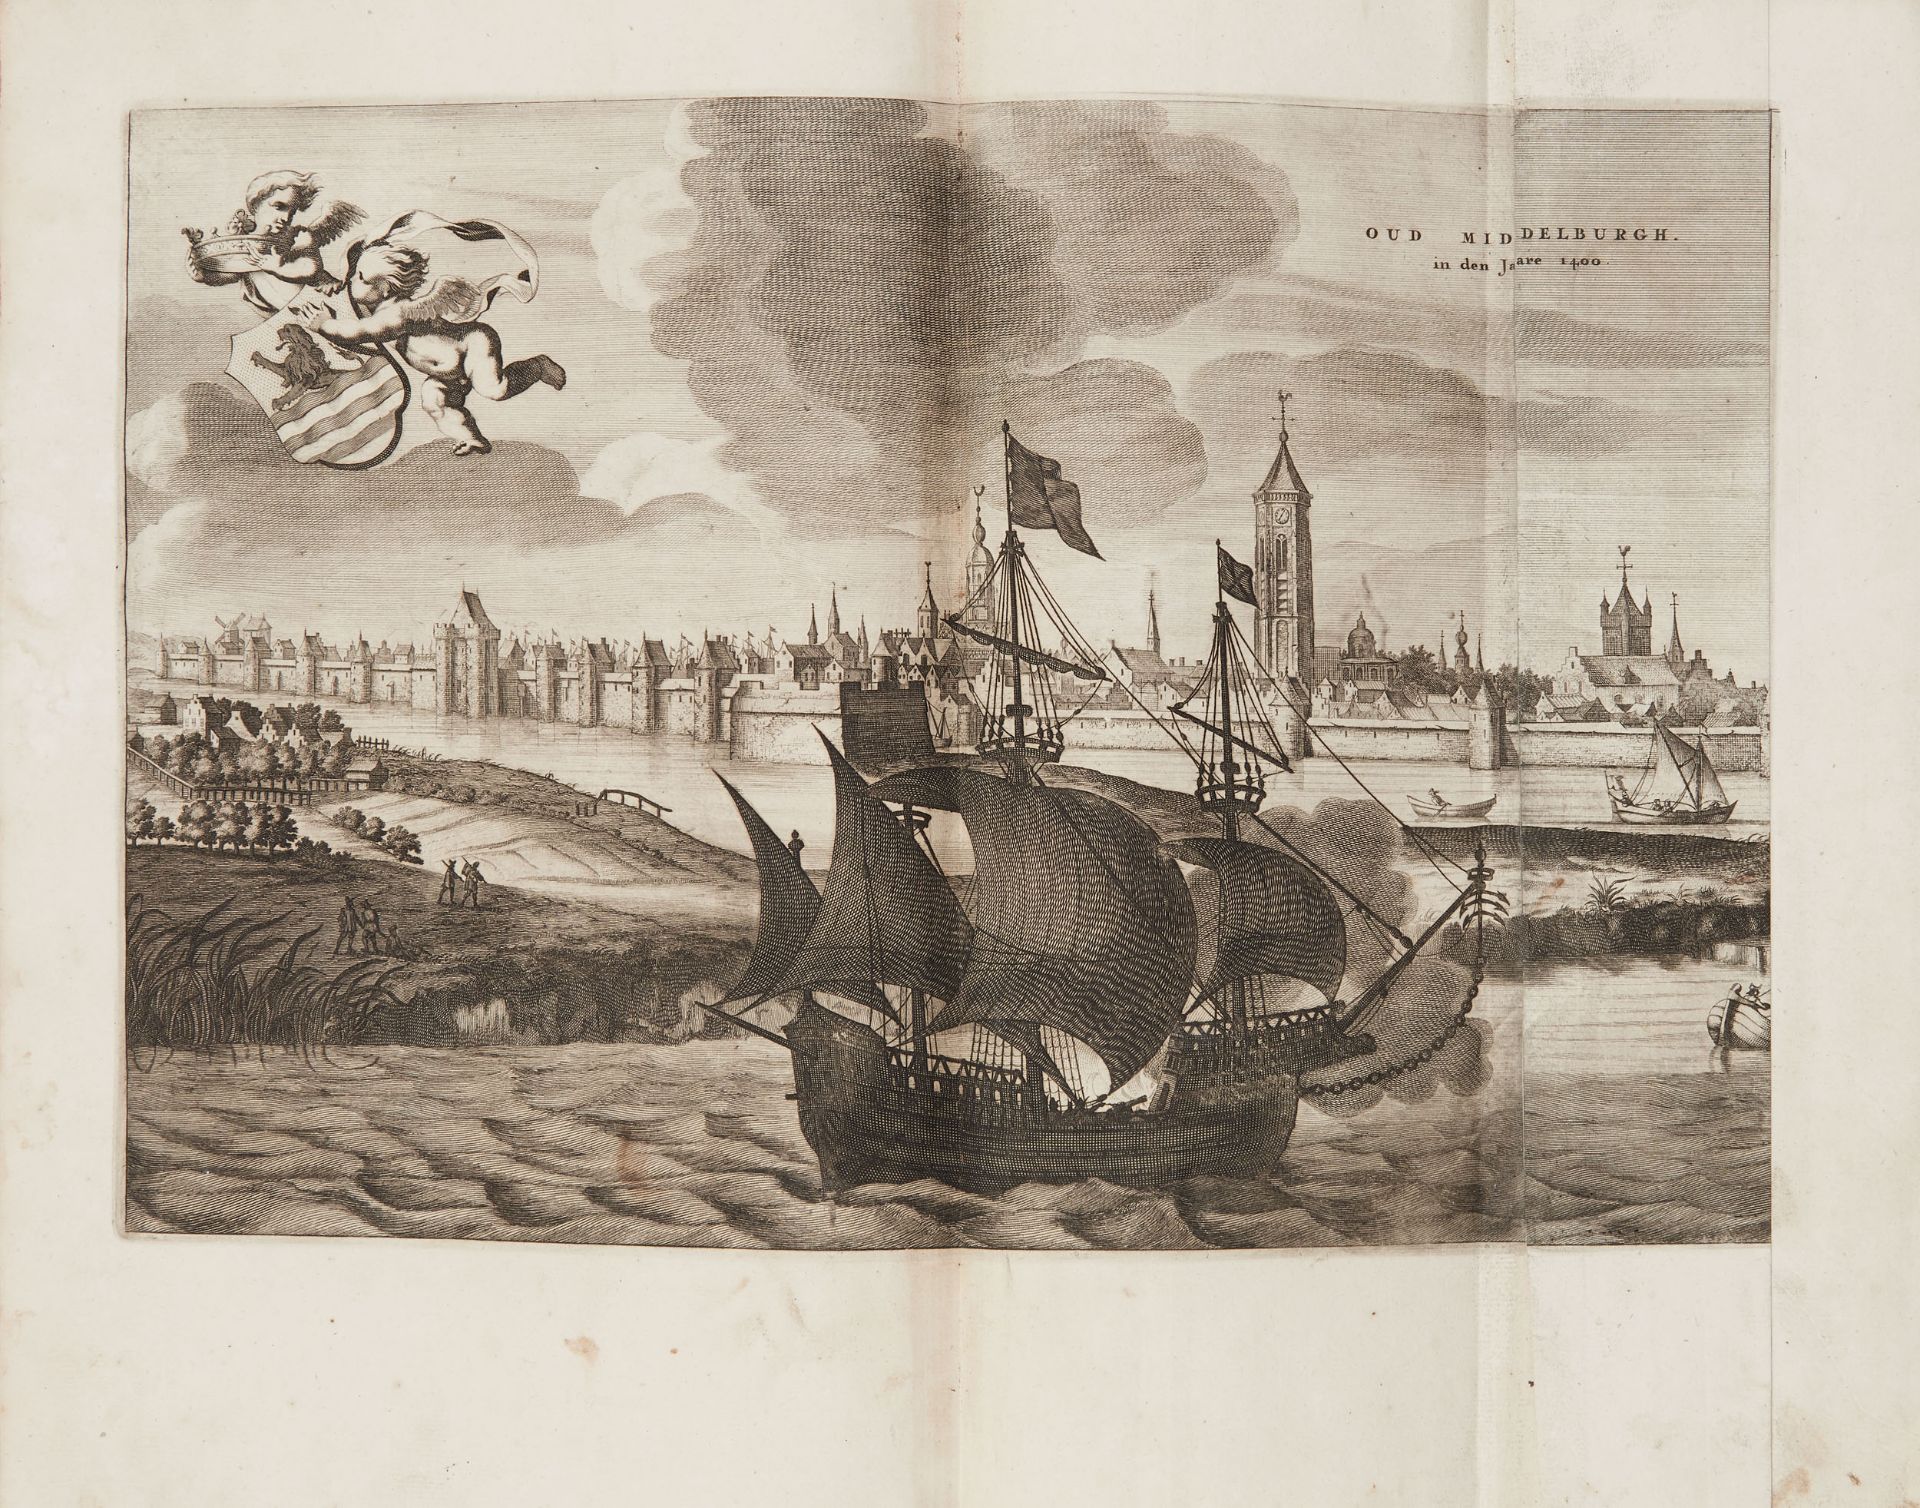 AA, Pieter van der (1659-1733) . La Galerie agreable du monde...cette partie comprend le volume